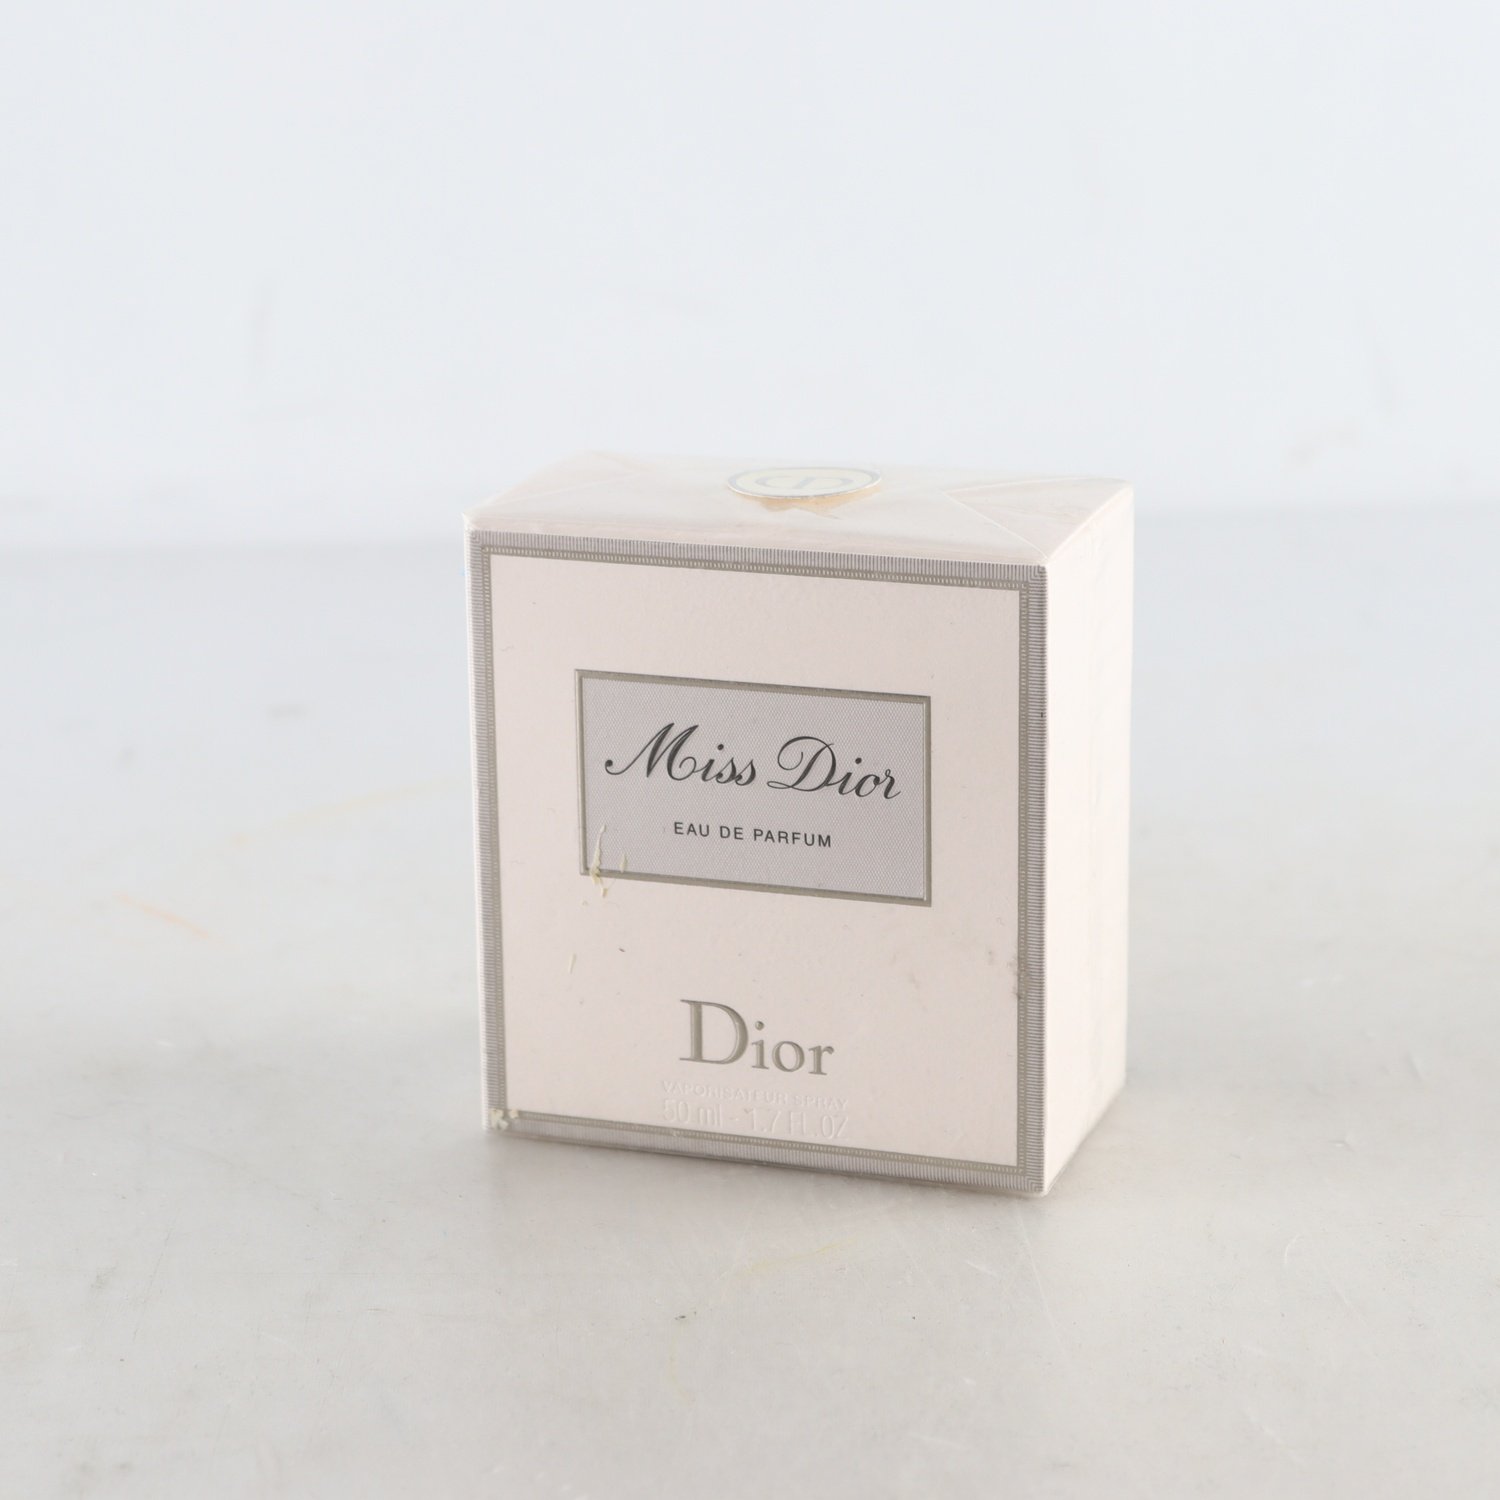 Parfym, Edp, Miss Dior av Dior